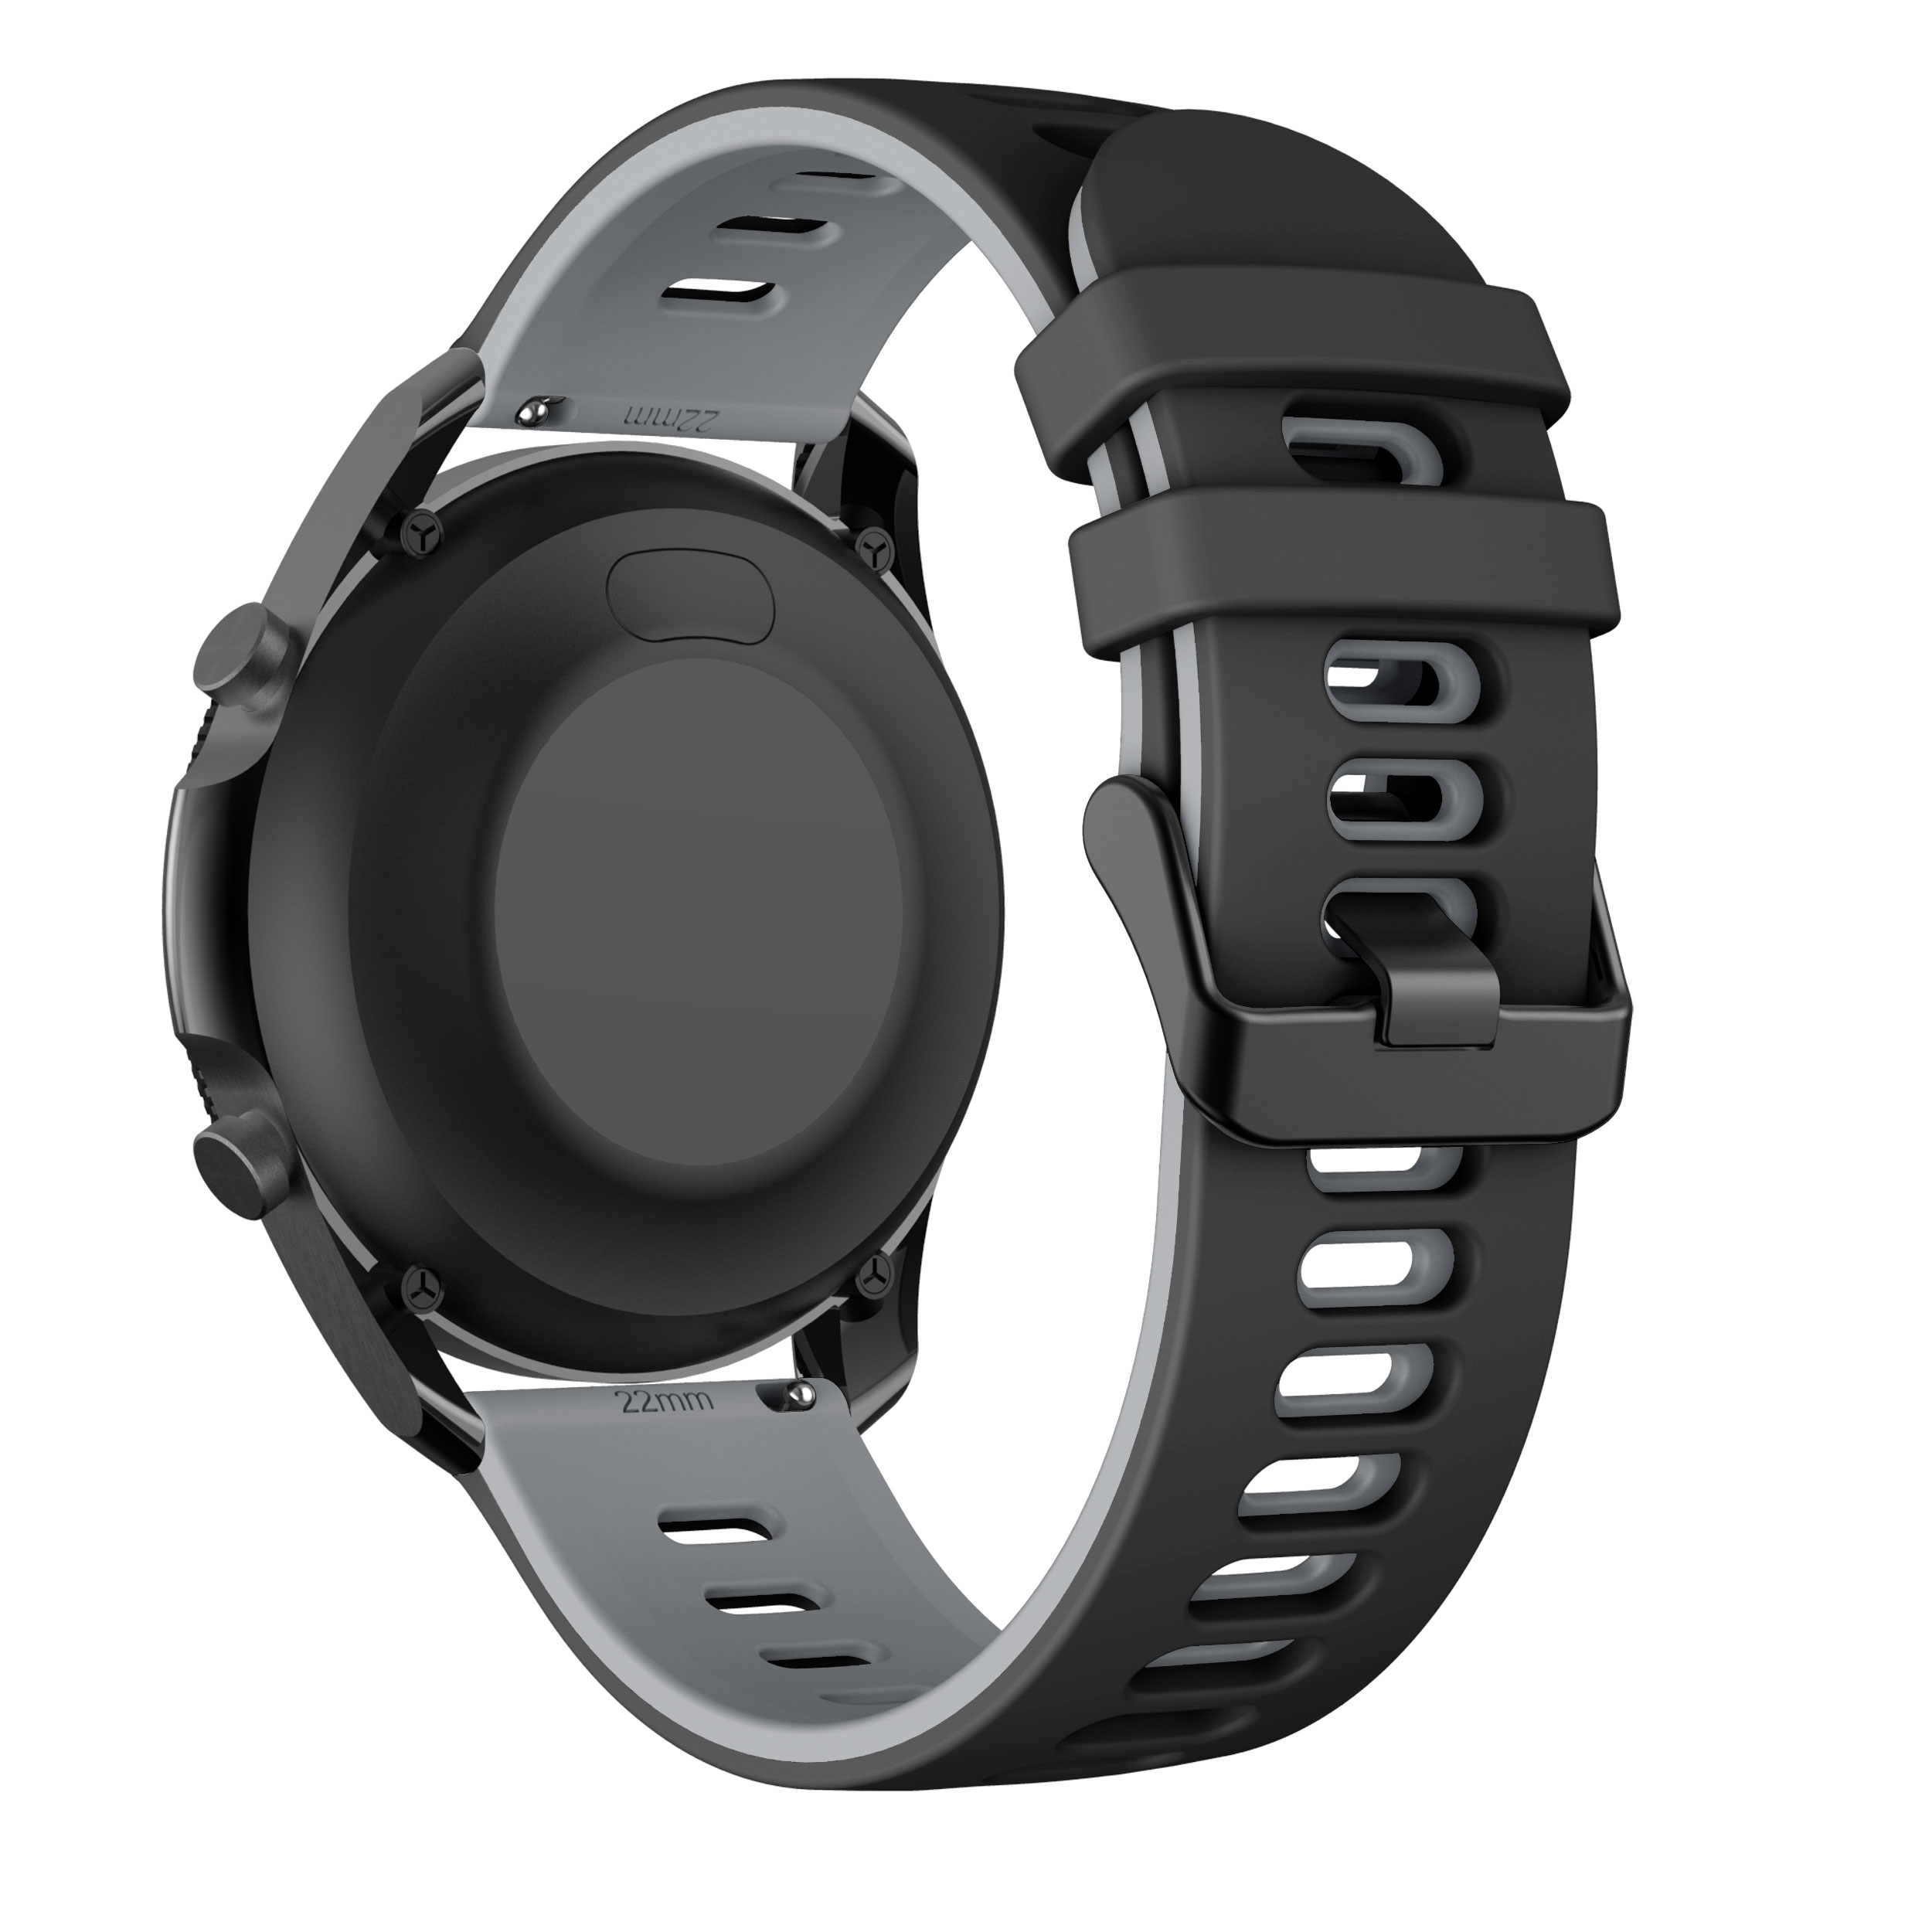 Dây đeo silicon 22mm cho đồng hồ thông minh Samsung Galaxy Watch 3 45mm / Galaxy Watch 46mm / Gear S3 tùy chọn